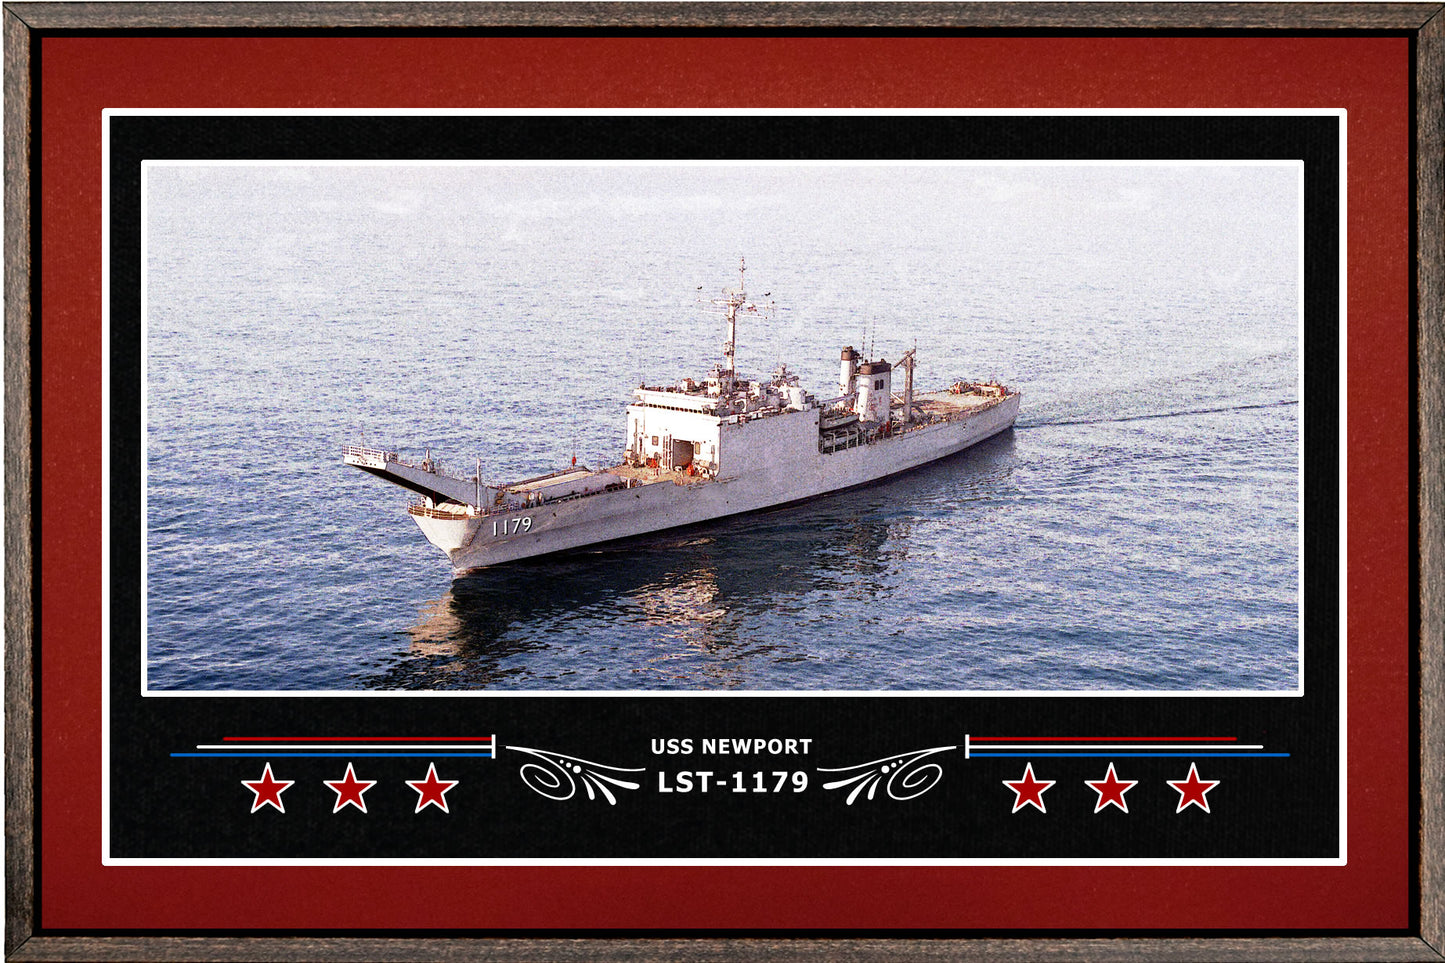 USS NEWPORT LST 1179 BOX FRAMED CANVAS ART BURGUNDY